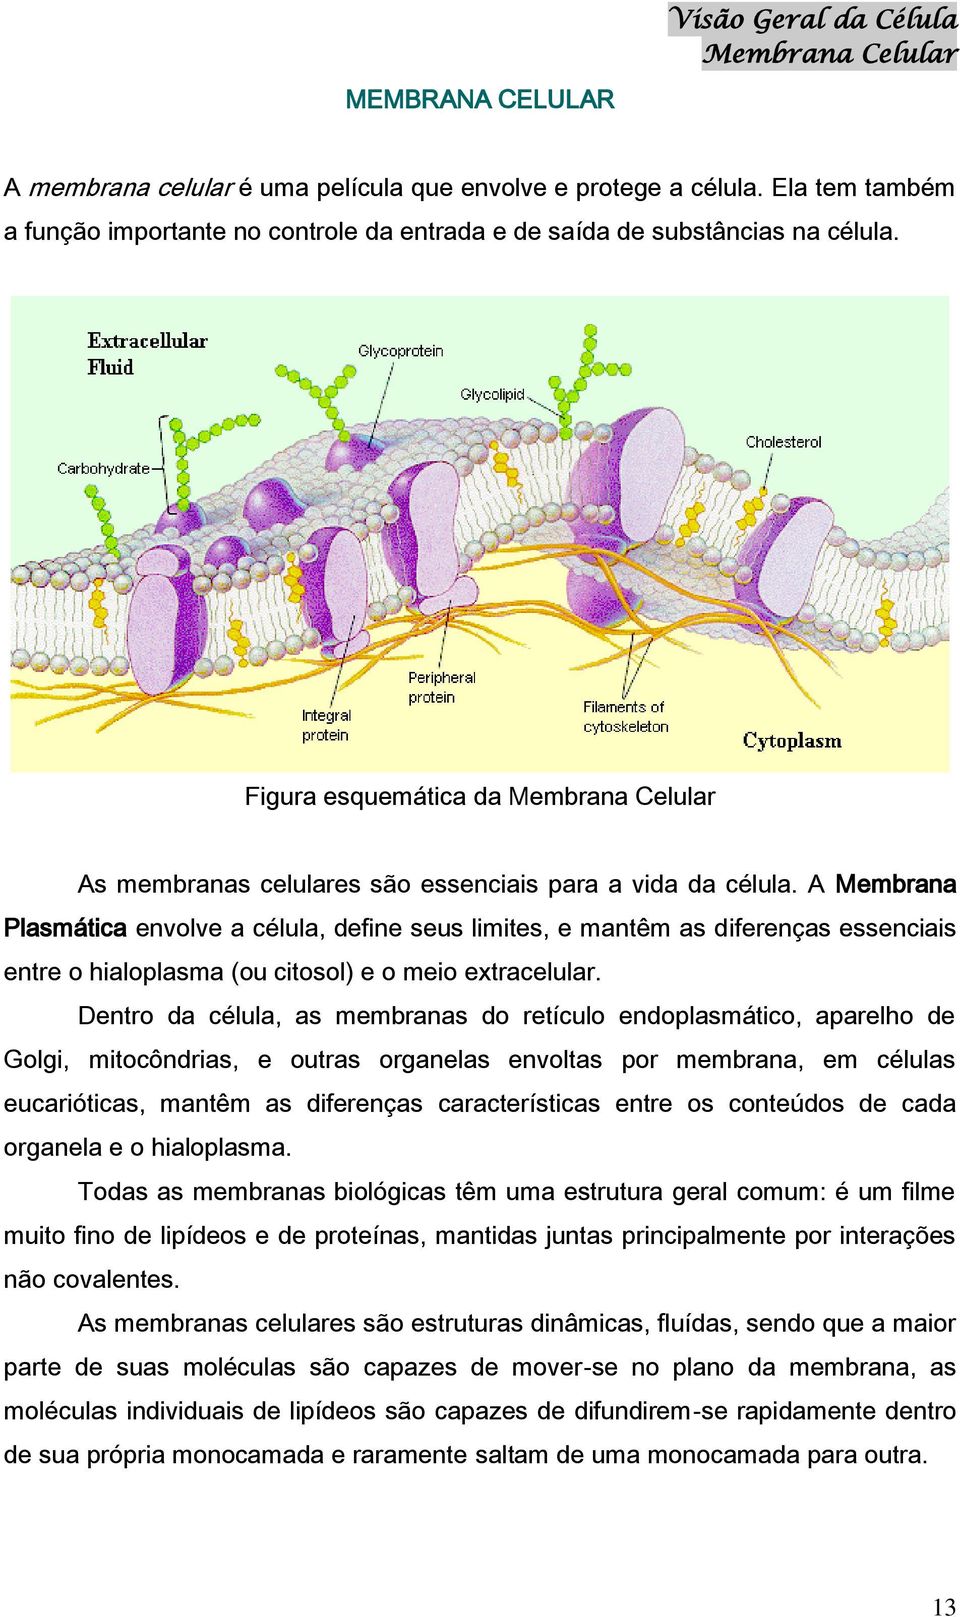 A Membrana Plasmática envolve a célula, define seus limites, e mantêm as diferenças essenciais entre o hialoplasma (ou citosol) e o meio extracelular.